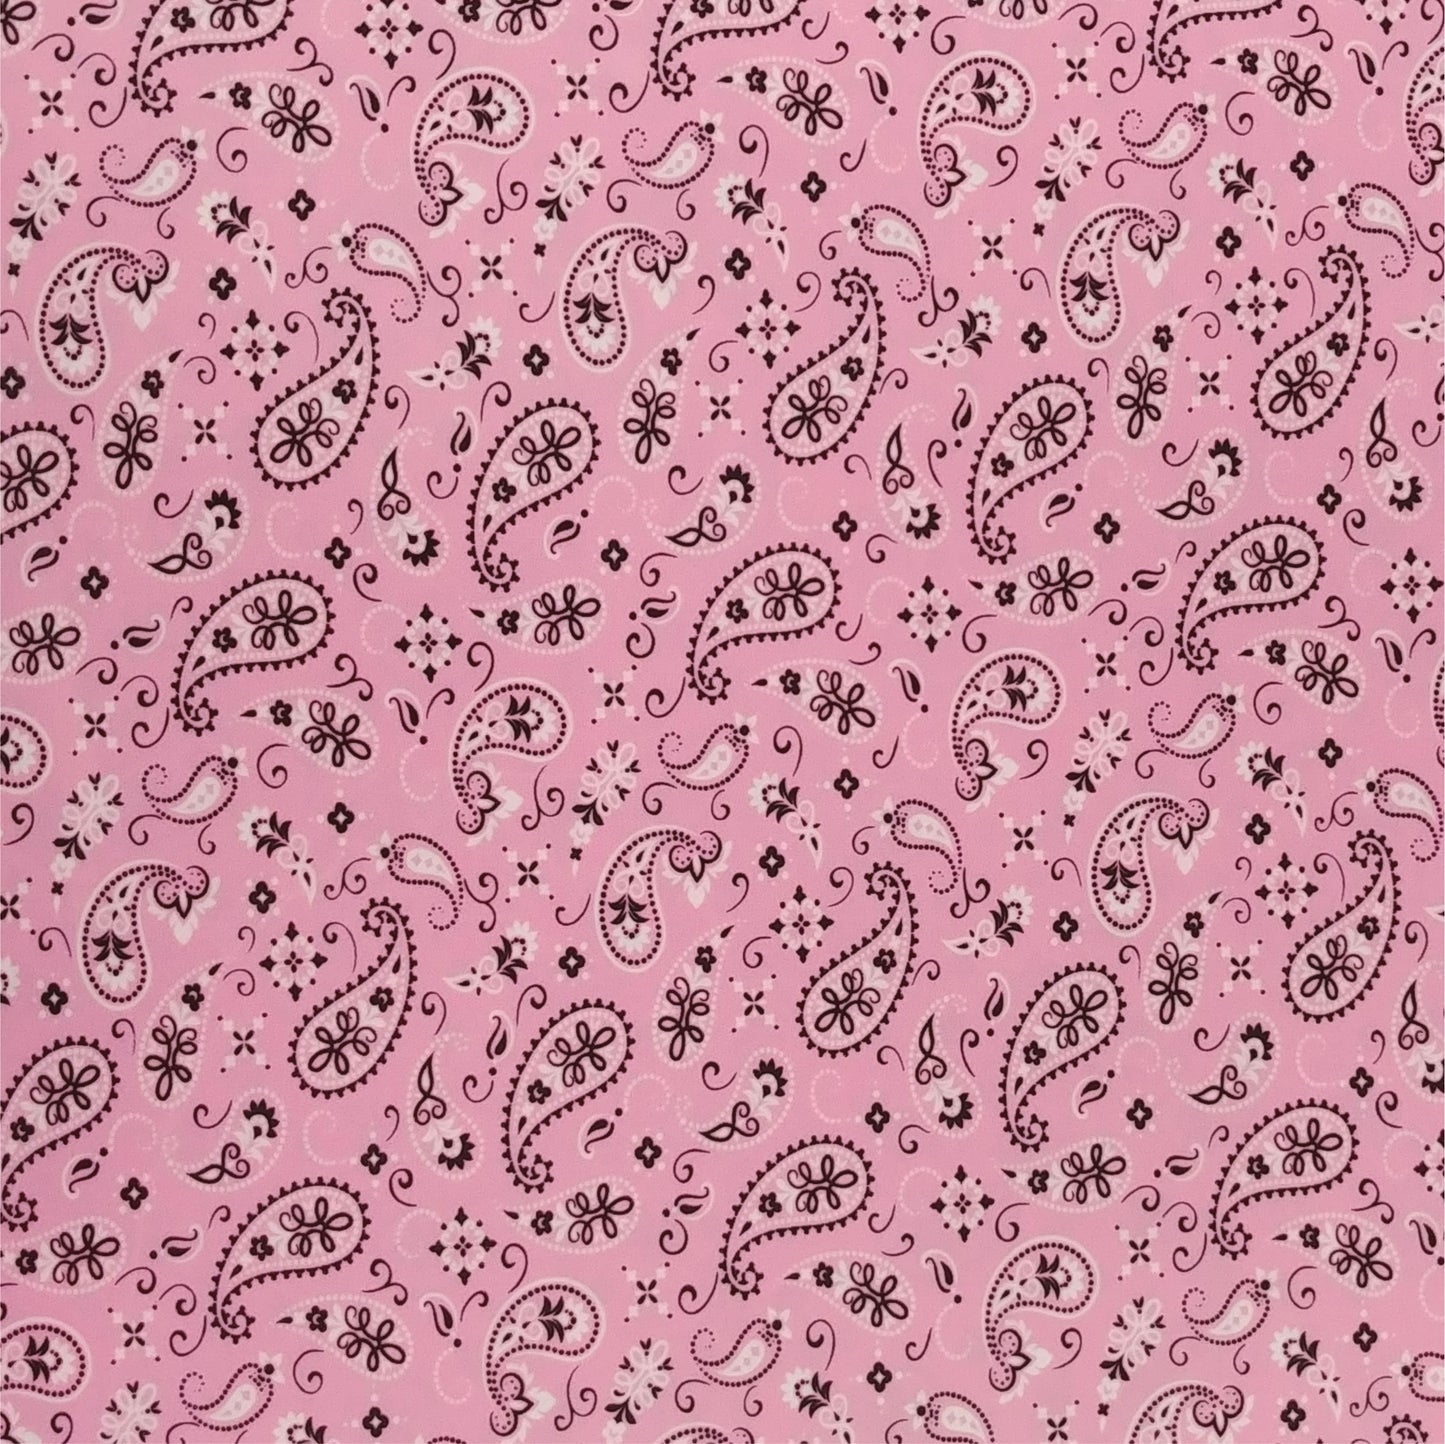 ThermoFlex HTV Fashion Patterns 12x15 Sheets-Pink/Black Bandana CLEARANCE